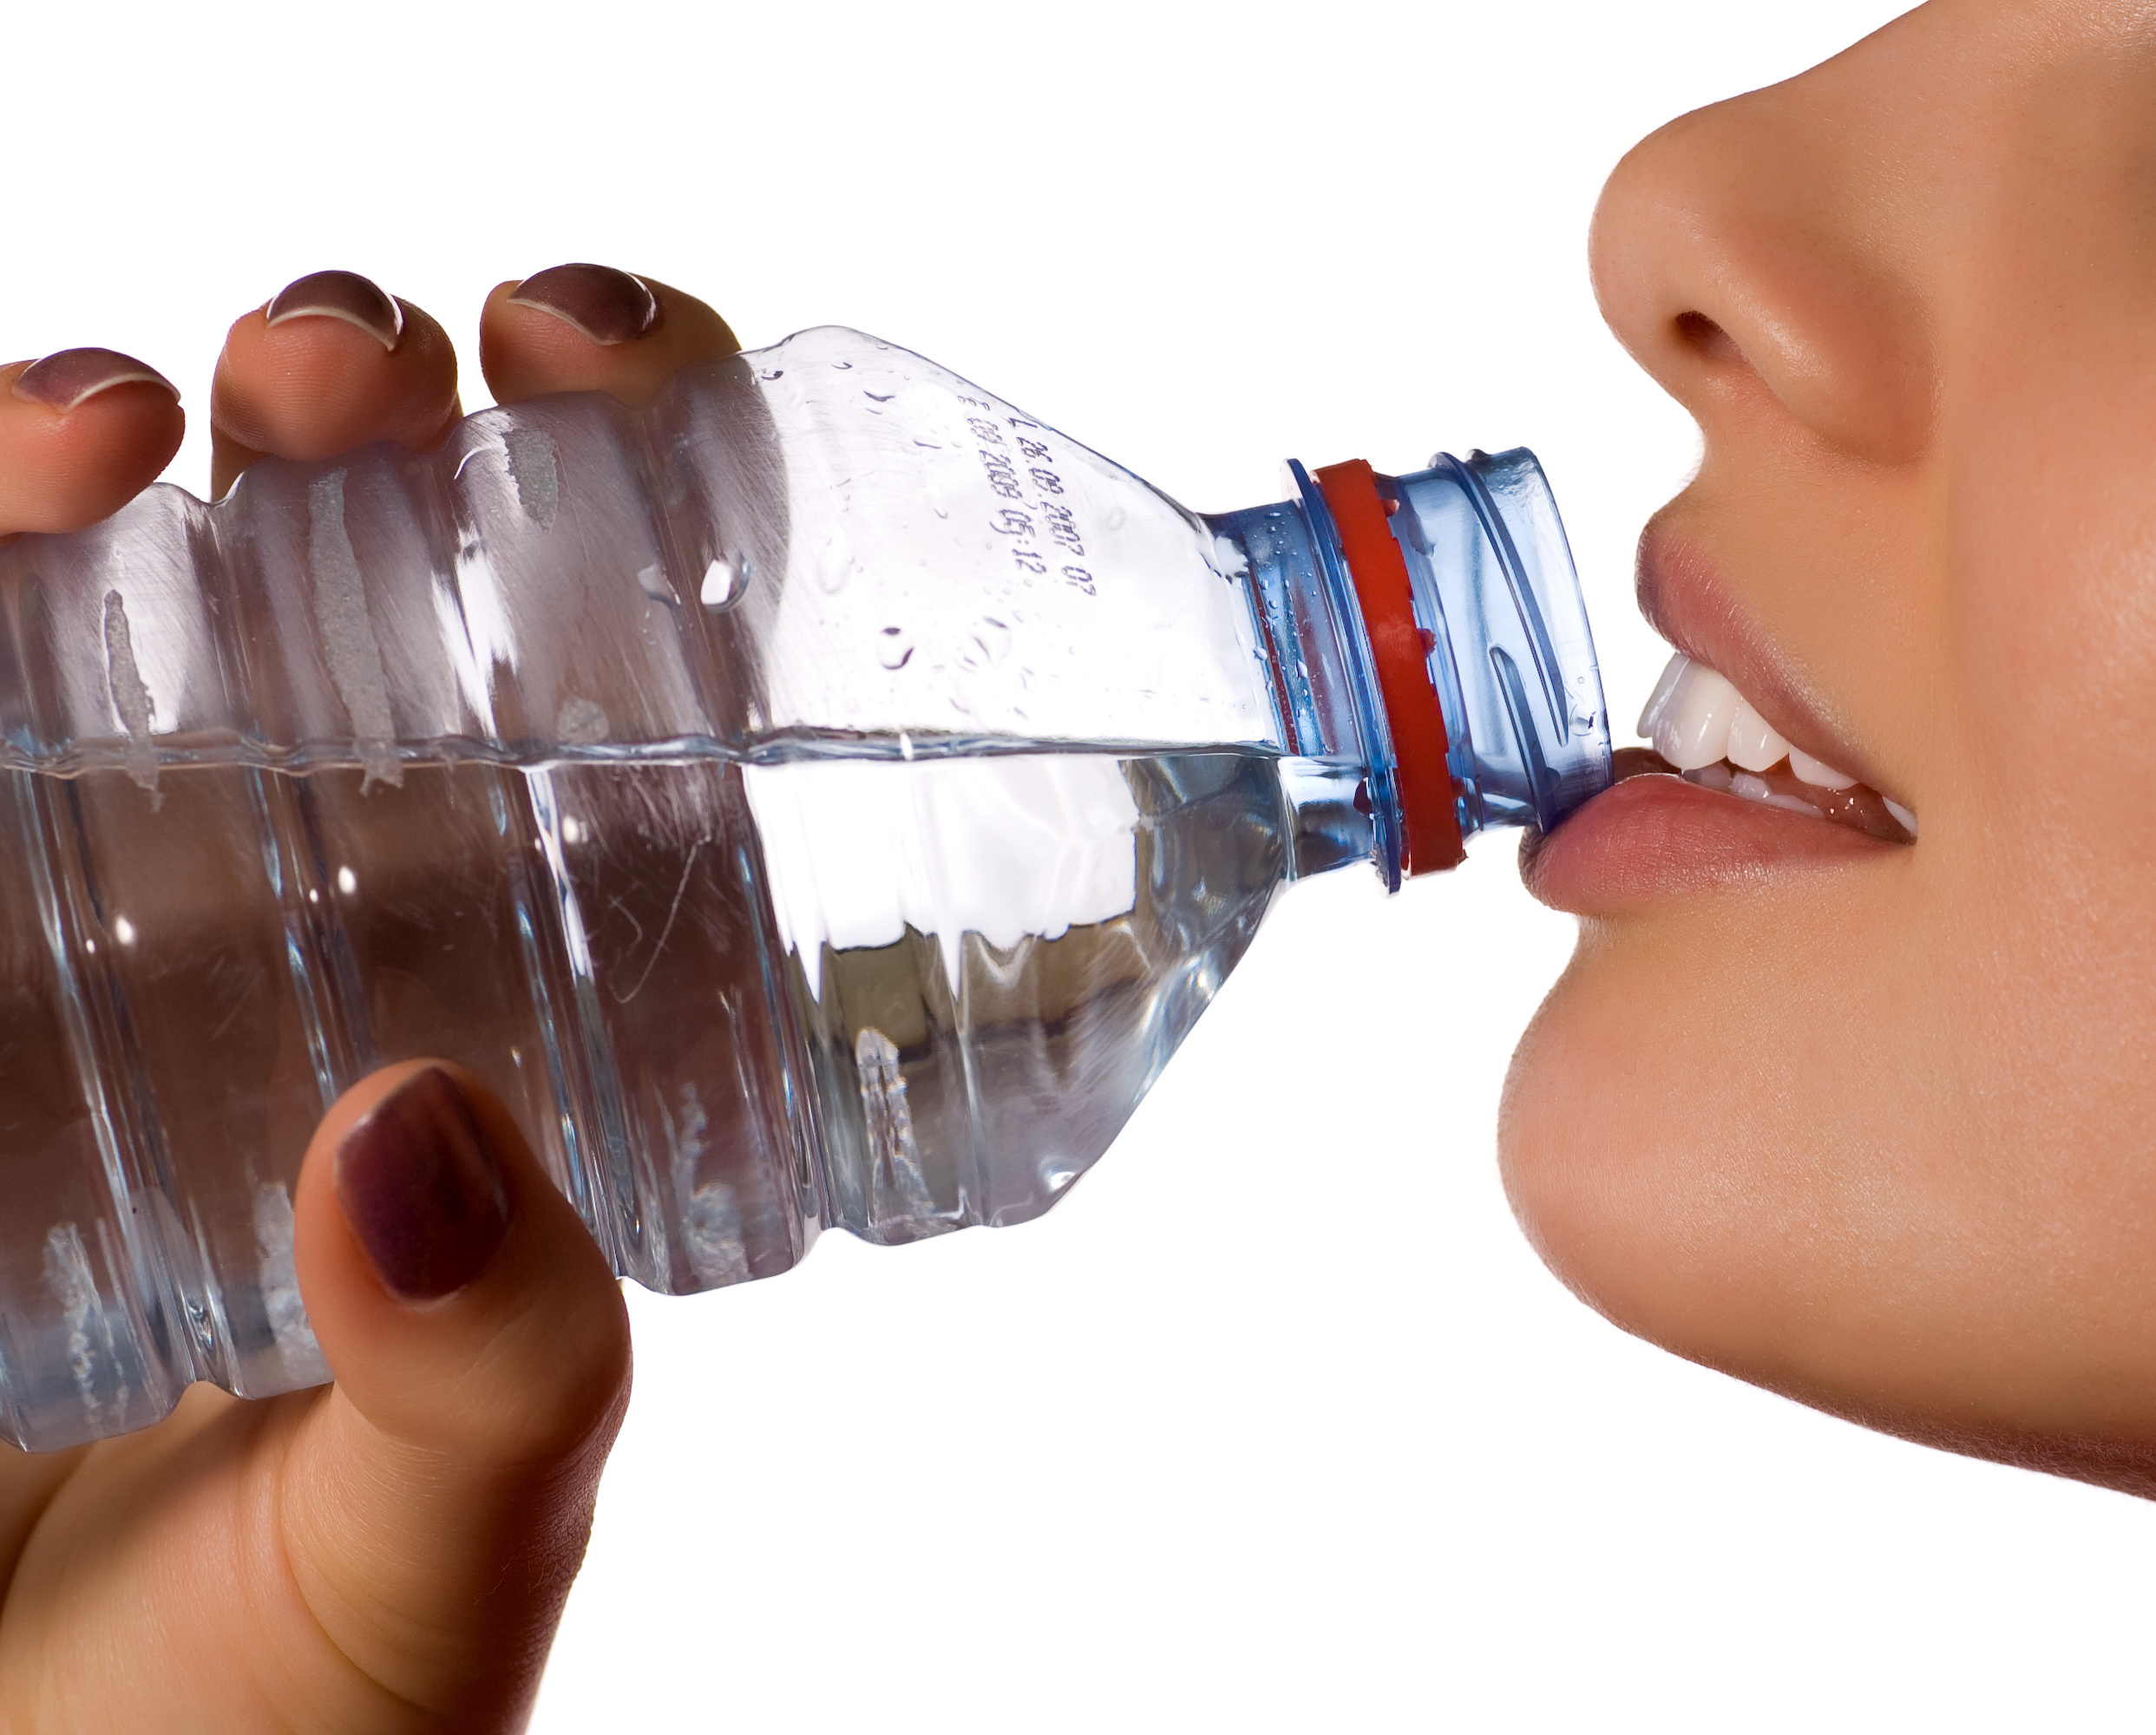 Глоток мочи. Пьет из бутылки. Питье Минеральных вод. Человек пьет воду из бутылки. Человек пьет воду в бутылке.